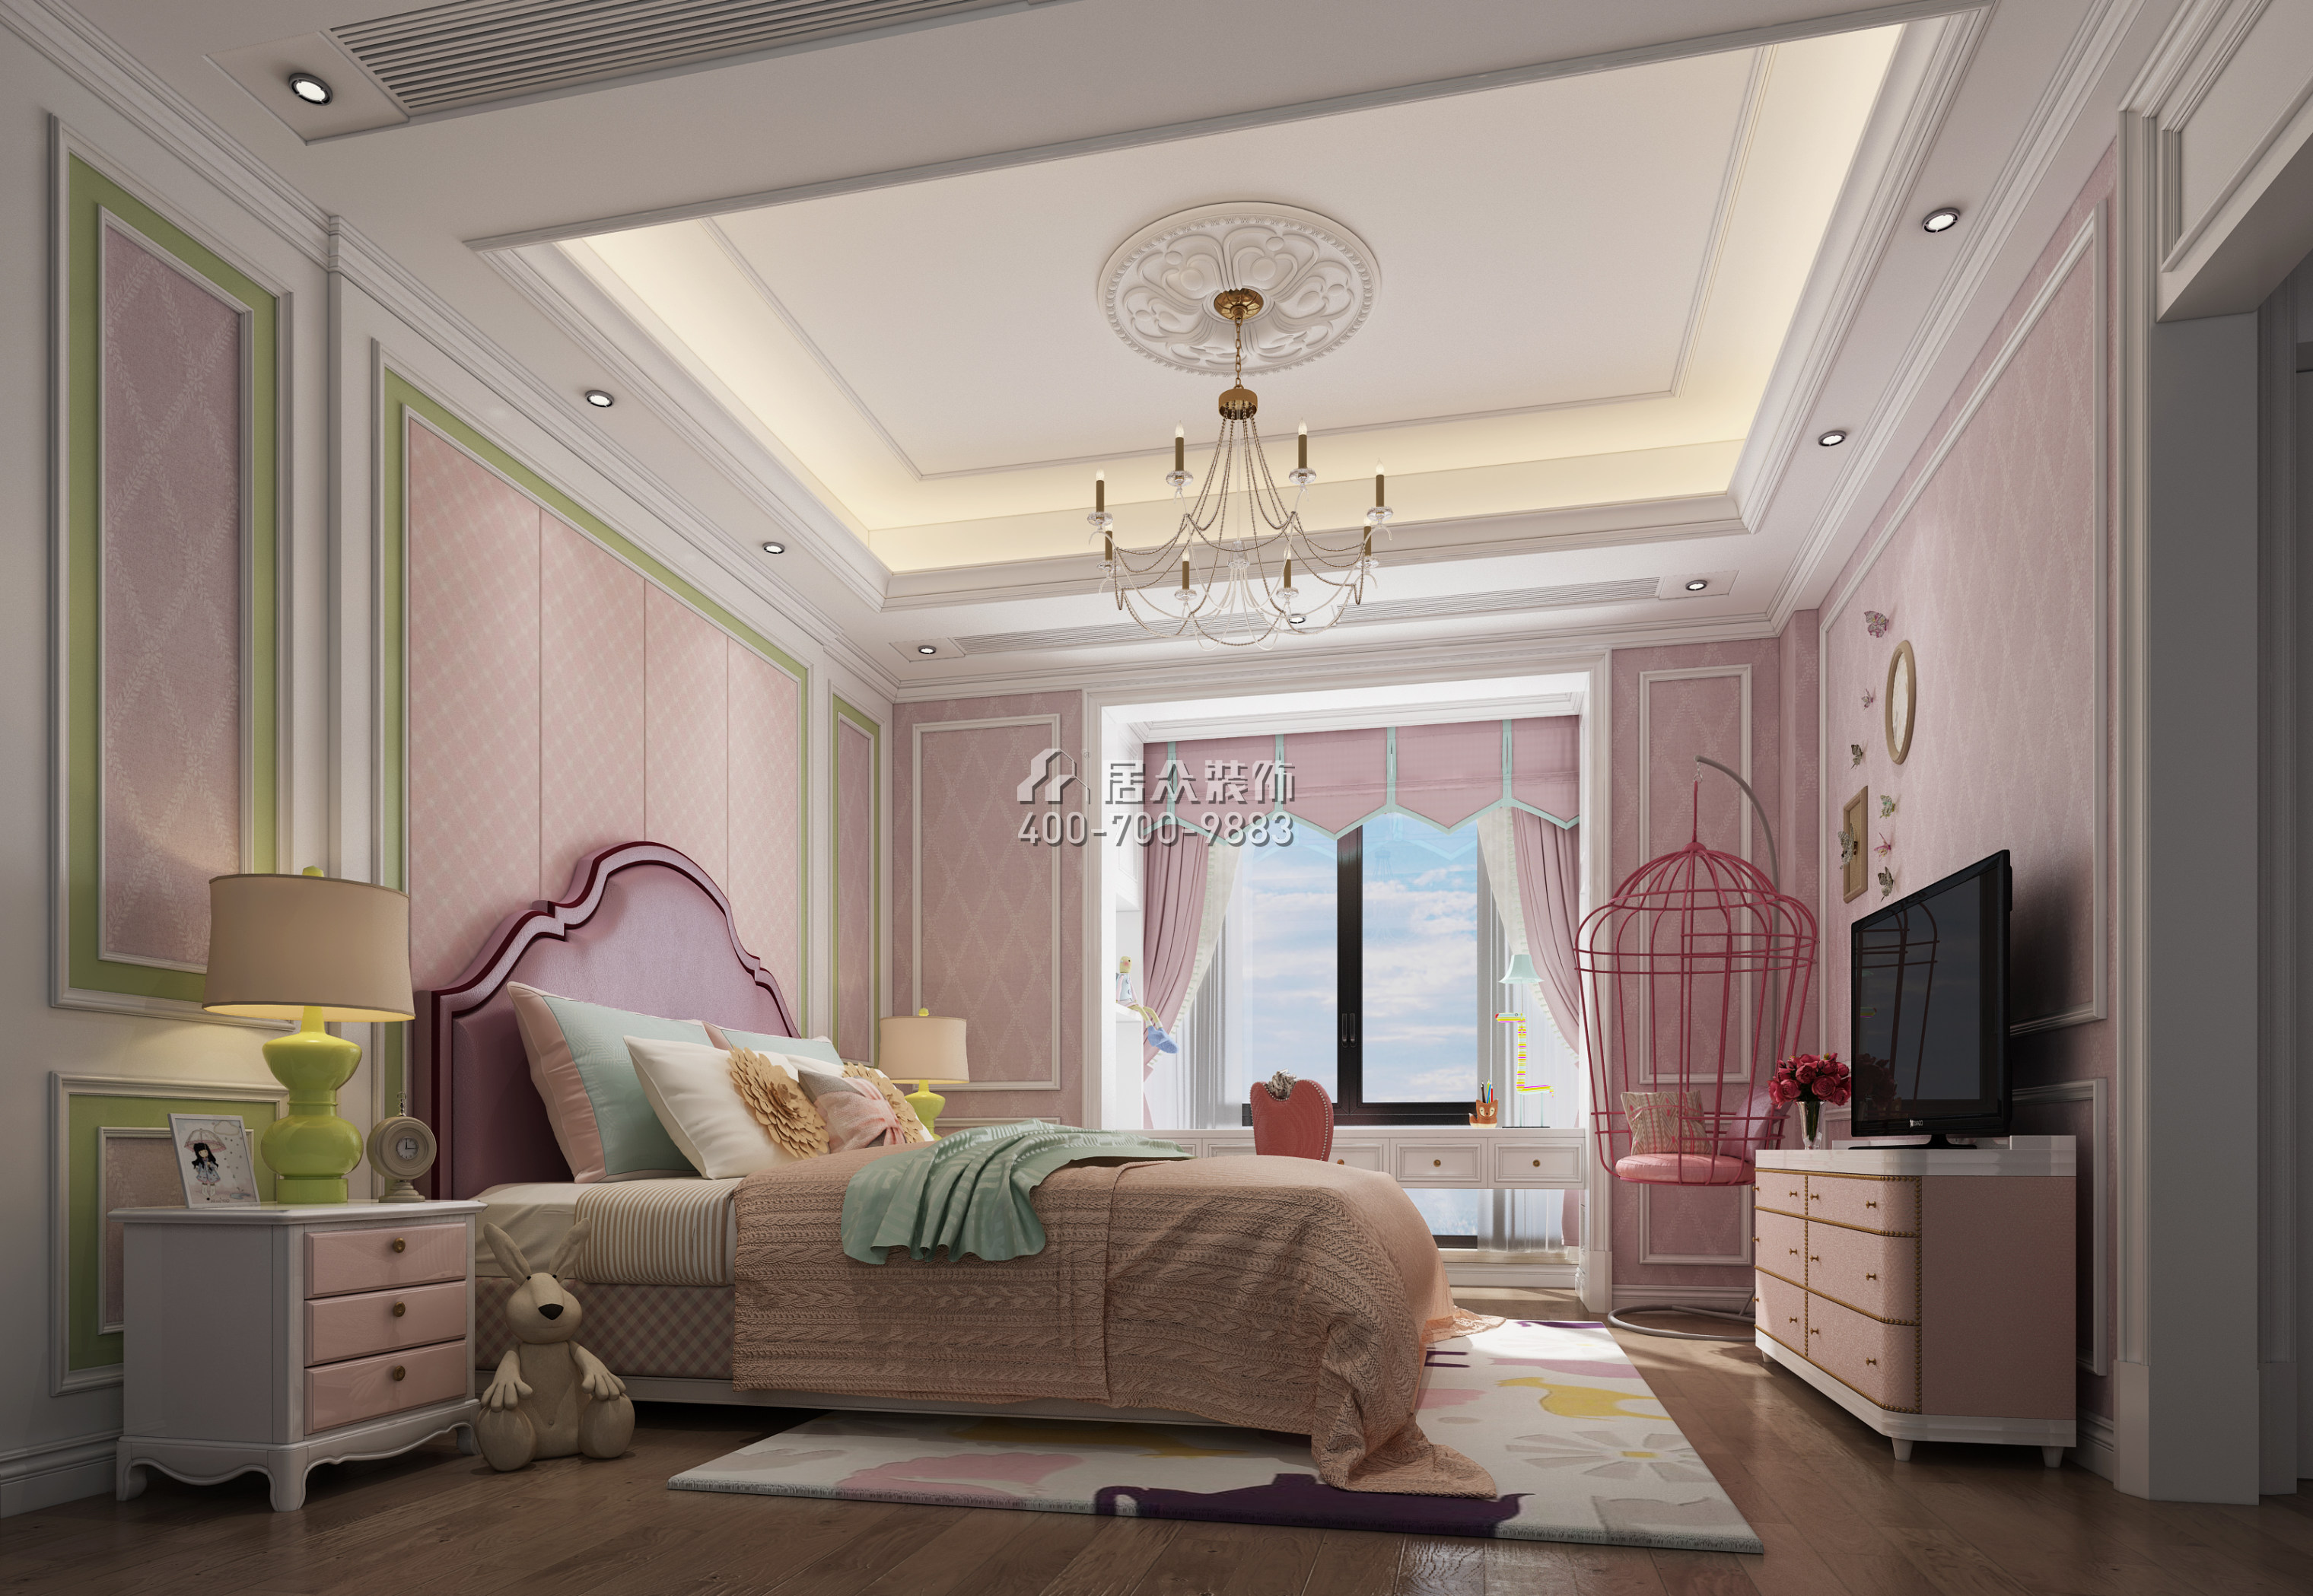 保利西海岸140平方米新古典风格平层户型卧室装修效果图